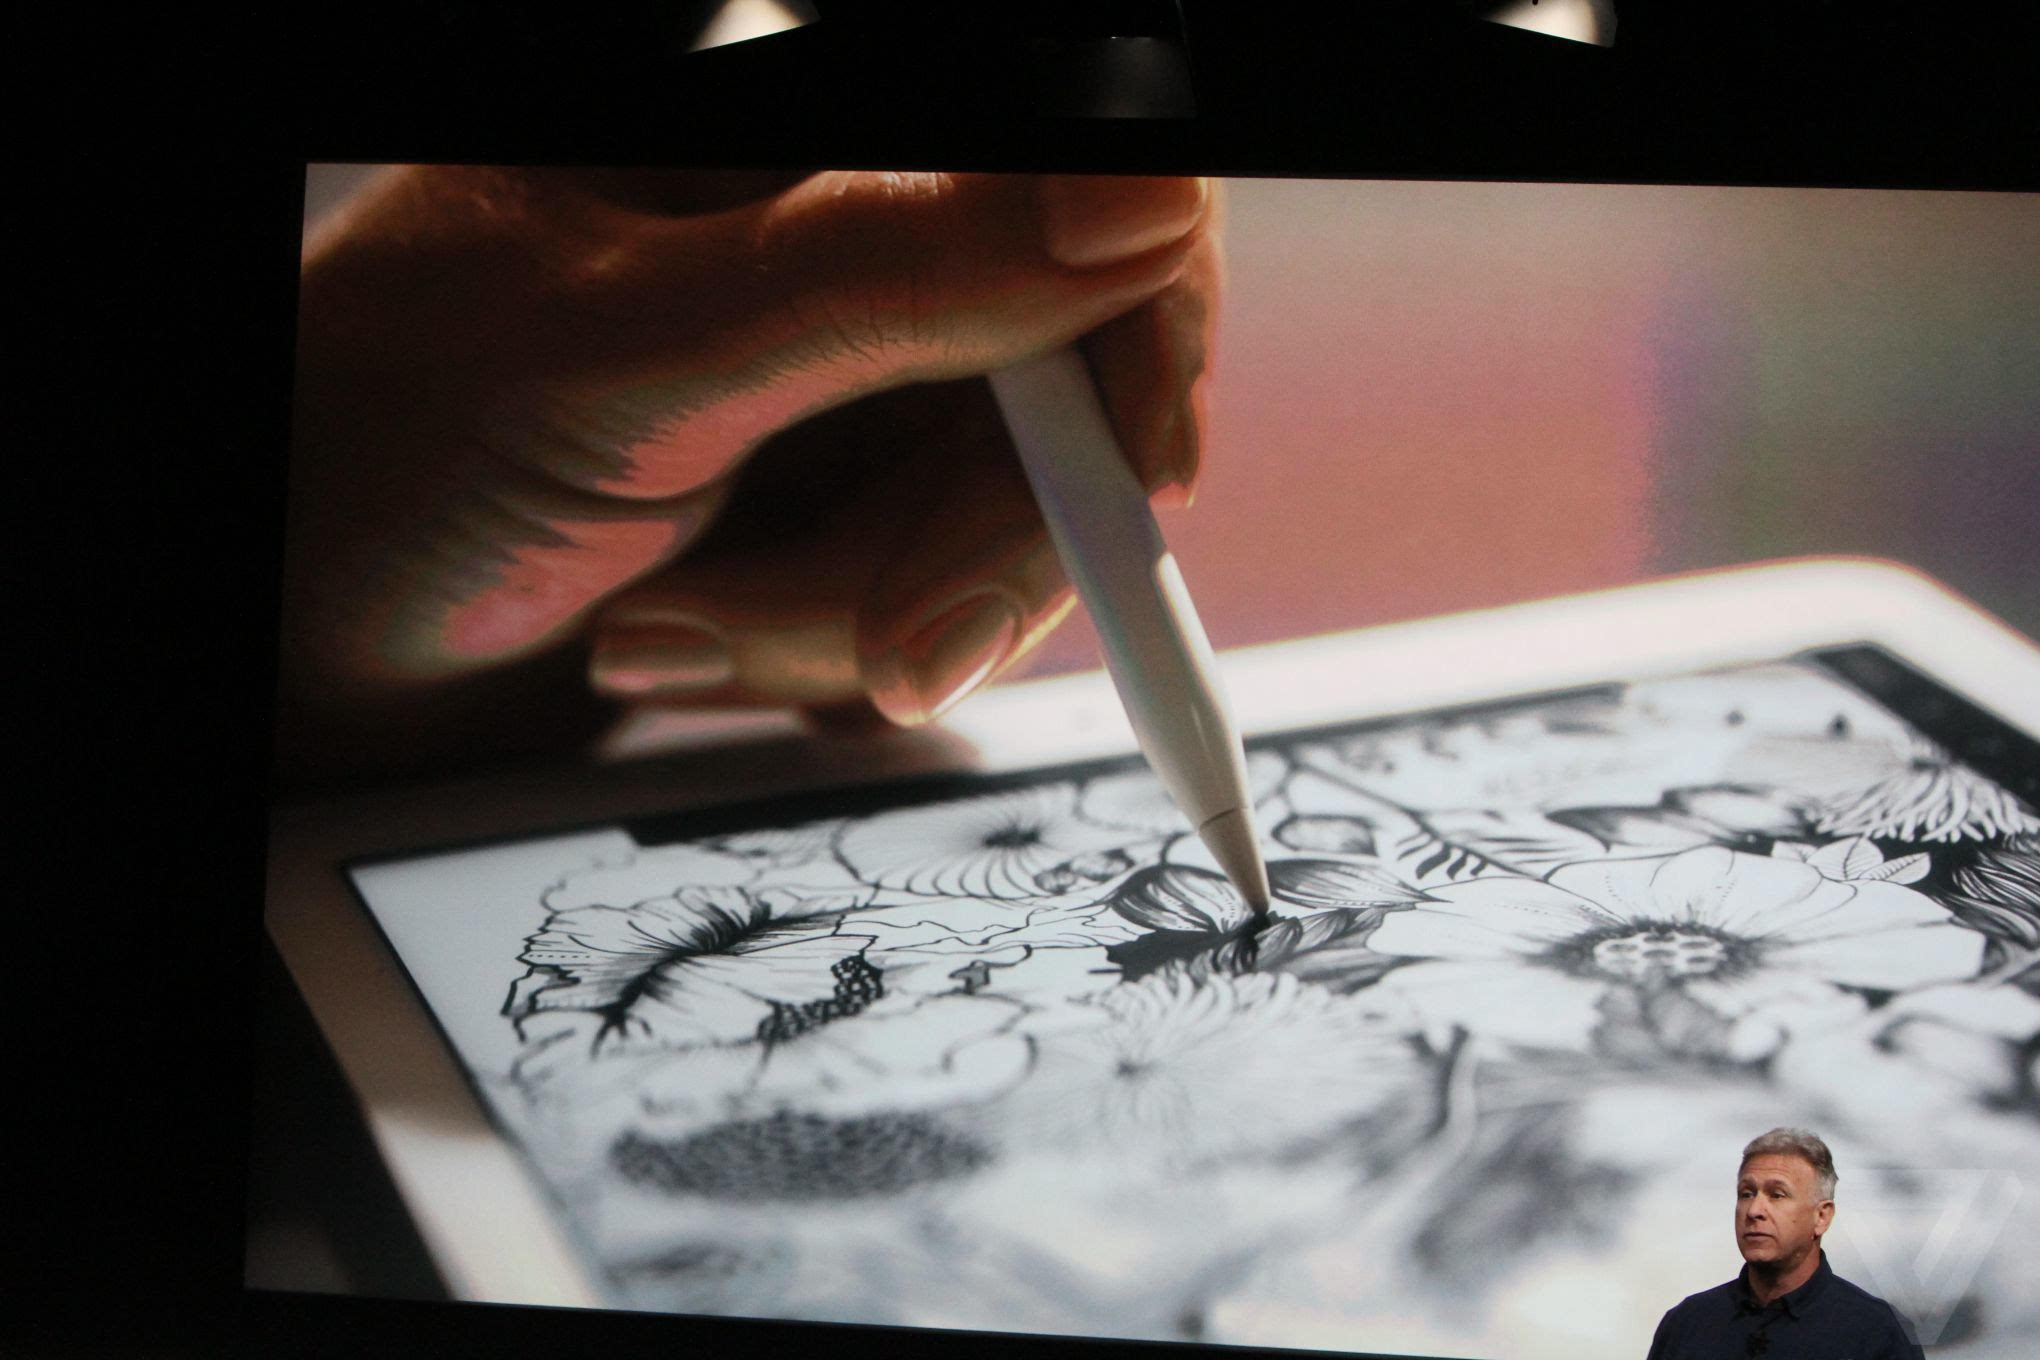 9.7英寸的iPad Pro正式发布！256GB+玫瑰金来了